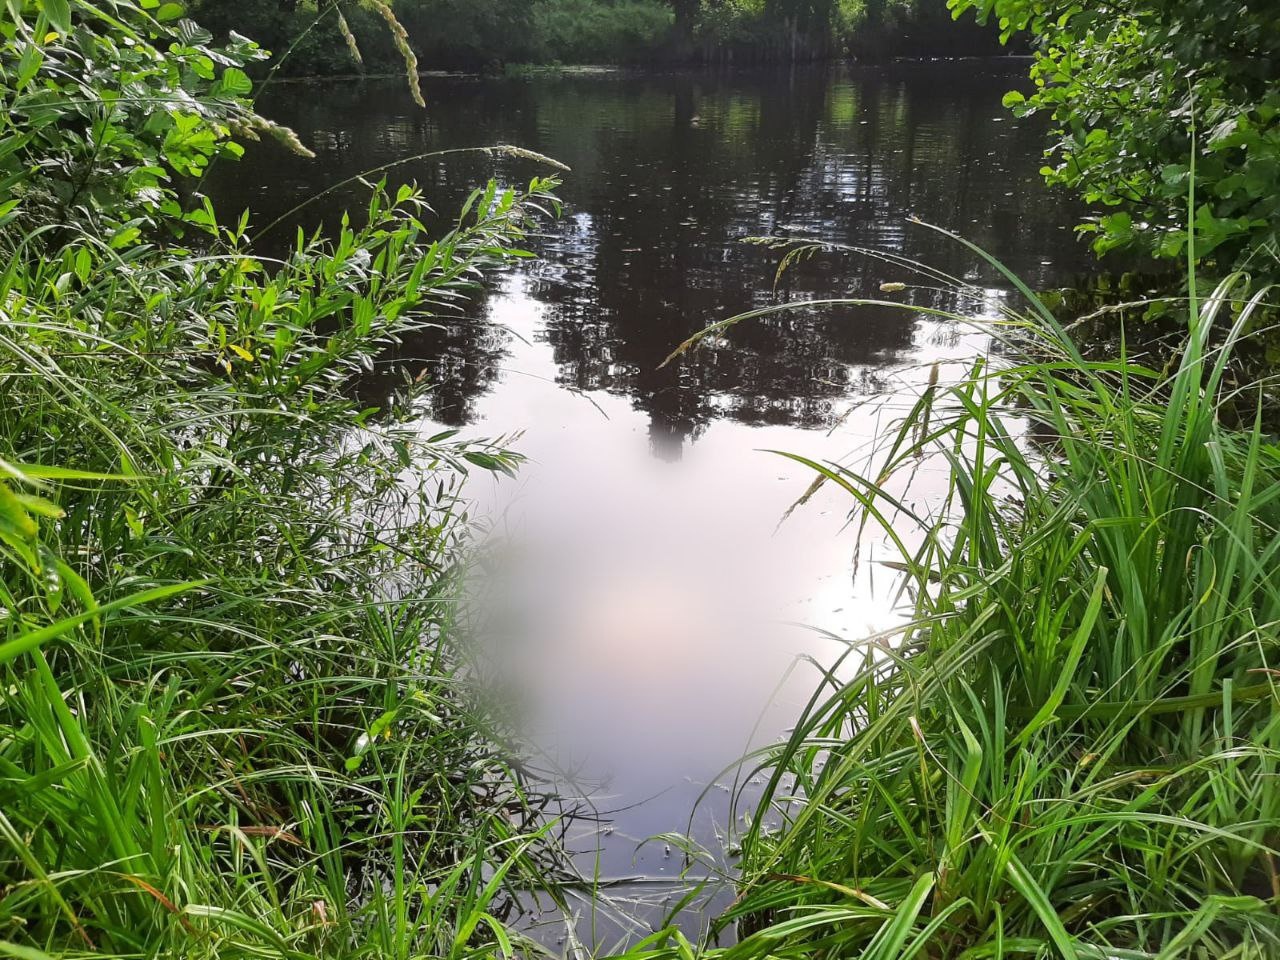 Следком проводит проверку по факту гибели мужчины на водоеме во Владимирской области 